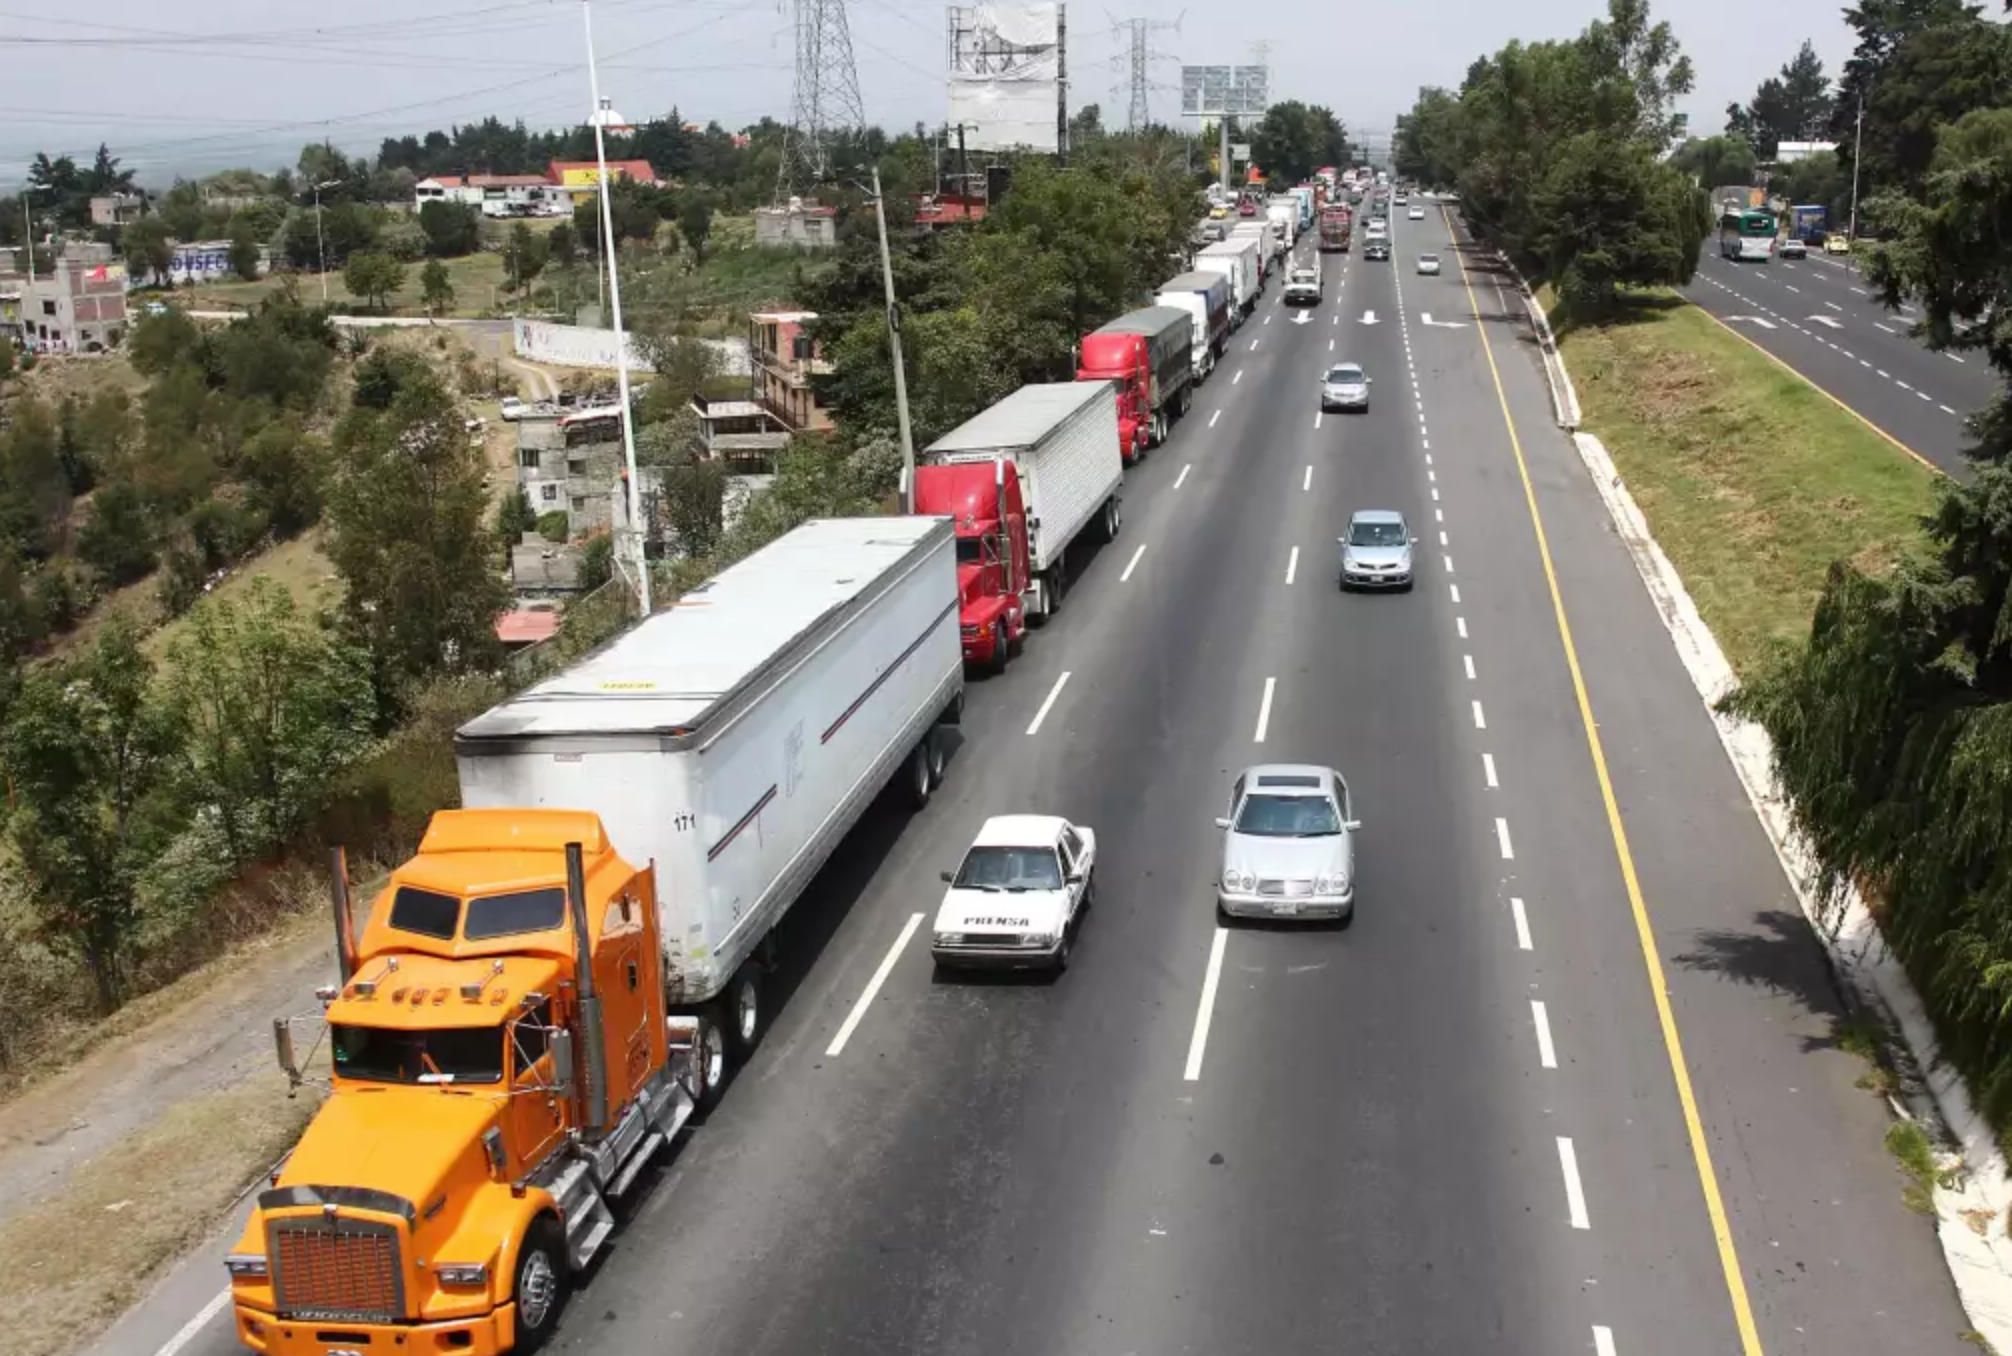 Graban choque múltiple en la autopista Guadalajara-Colima